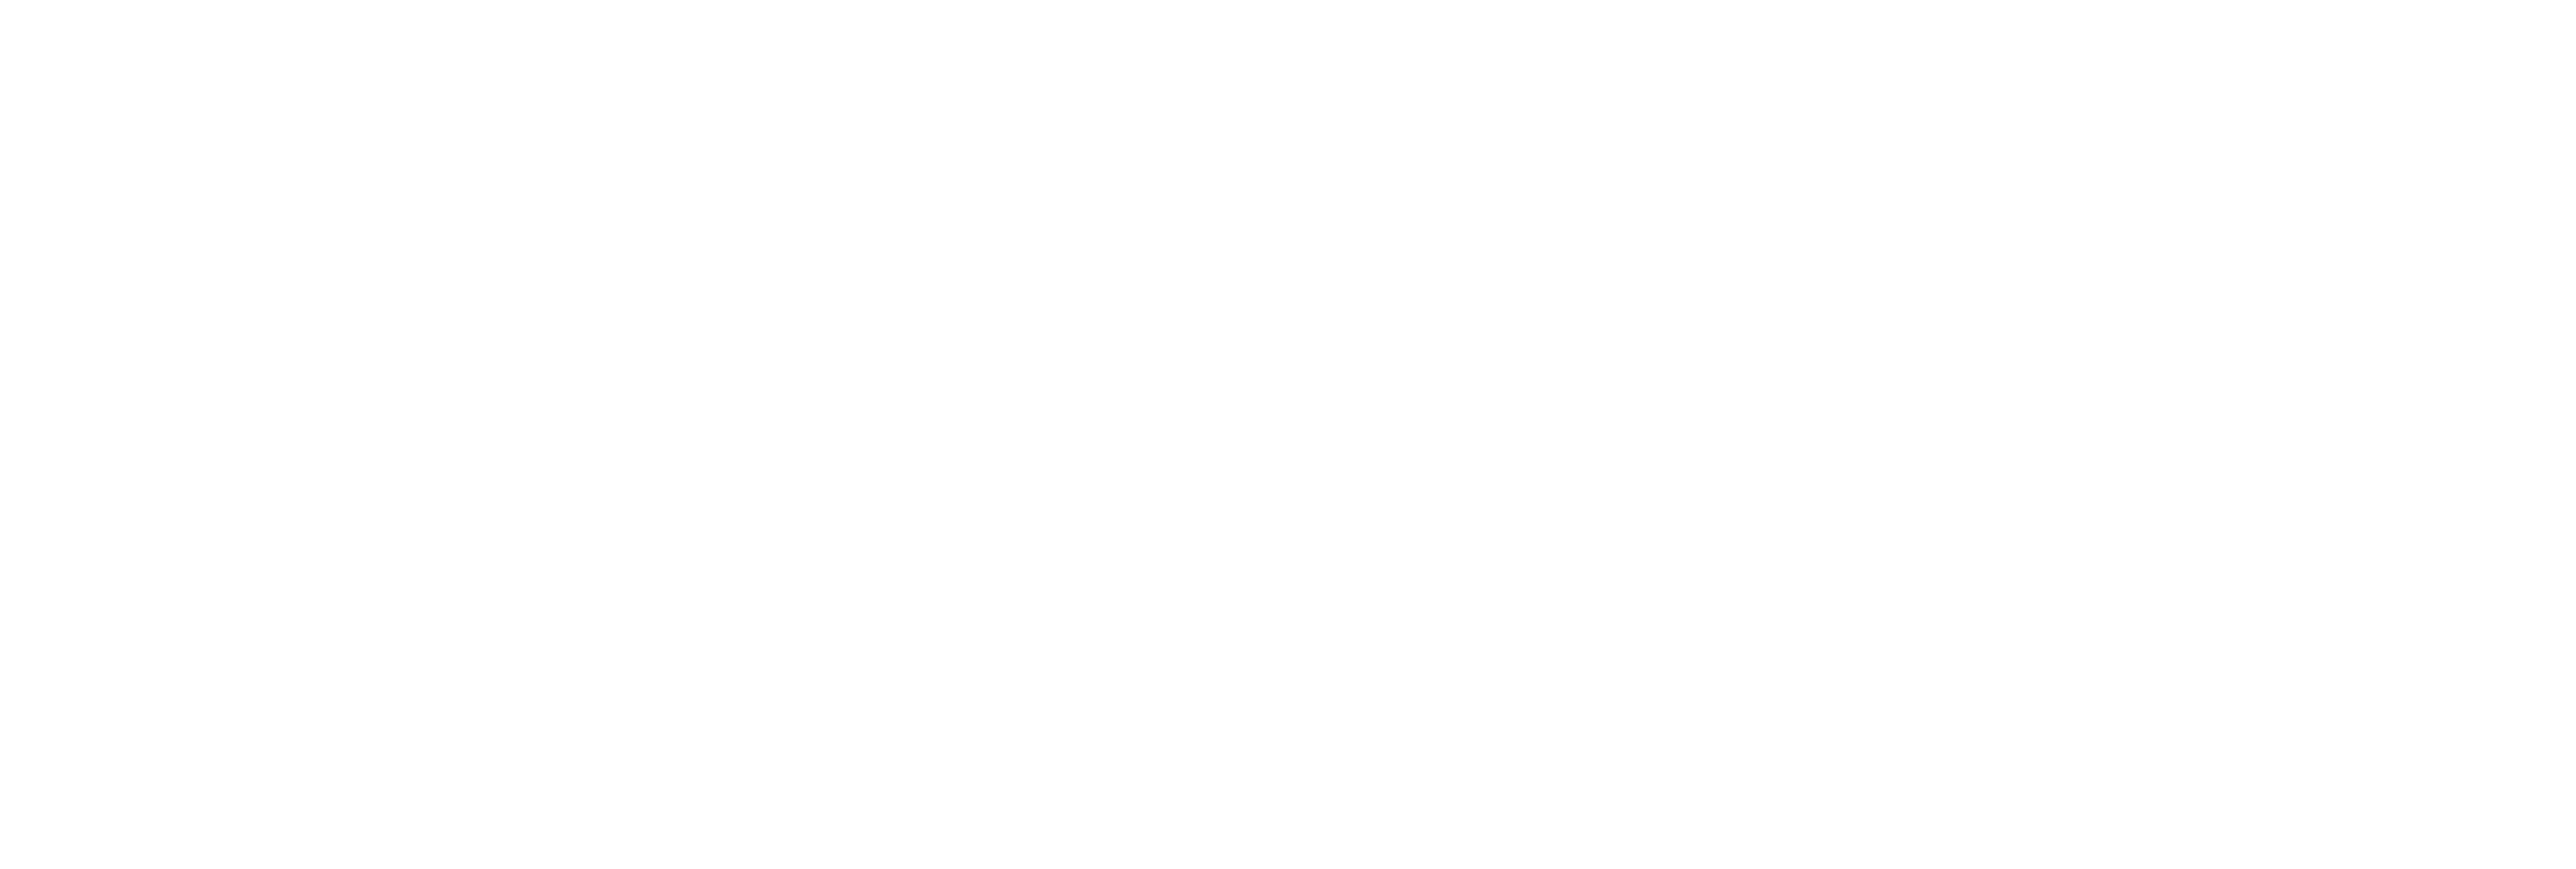 InterWorks Dashboard Portfolio